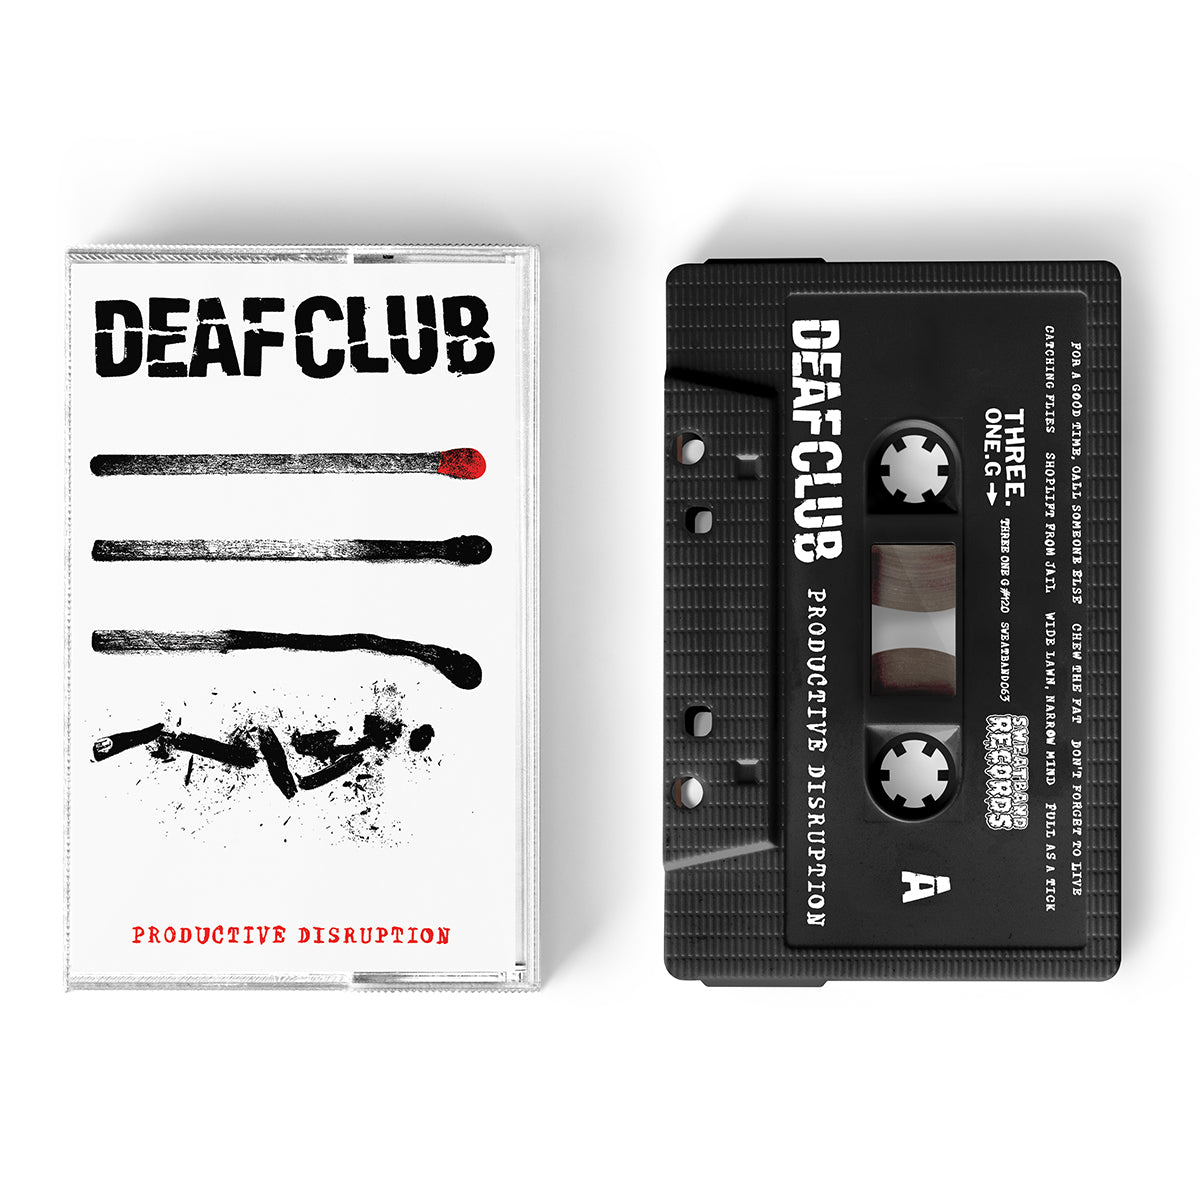 Deaf Club – Productive Disruption Cassette